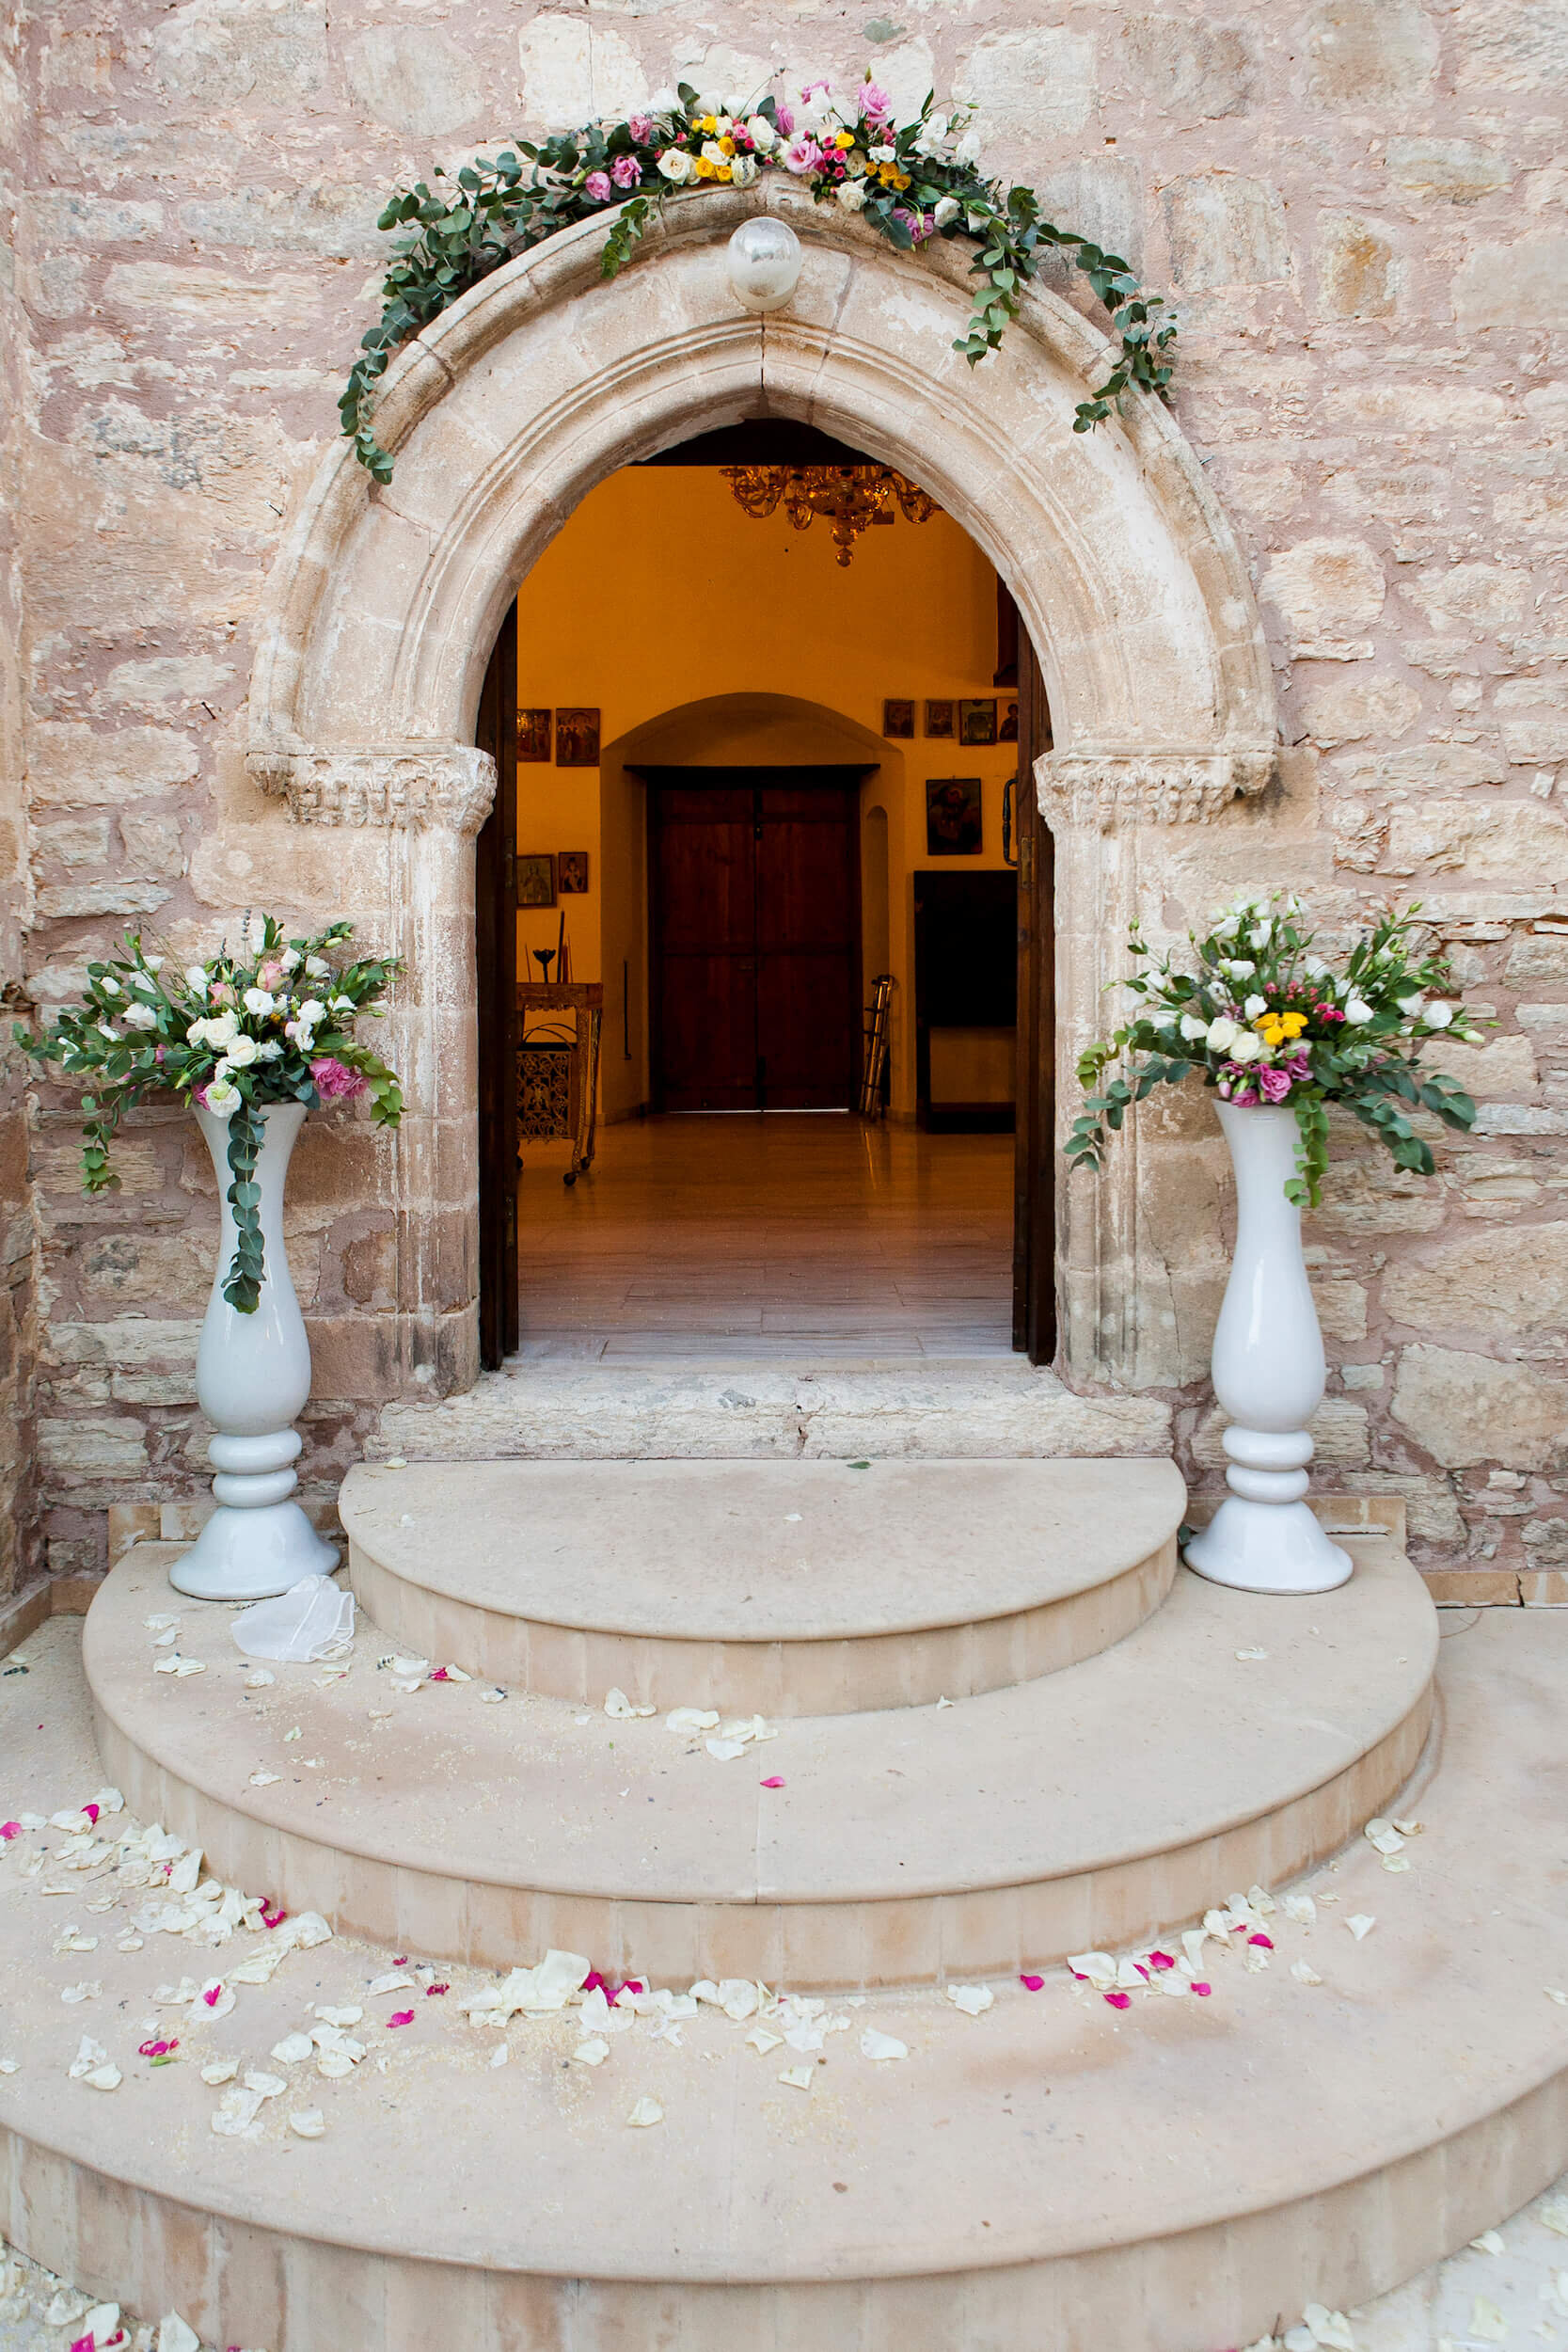 Best of Cyprus Weddings - Minthis Resort Wedding venue